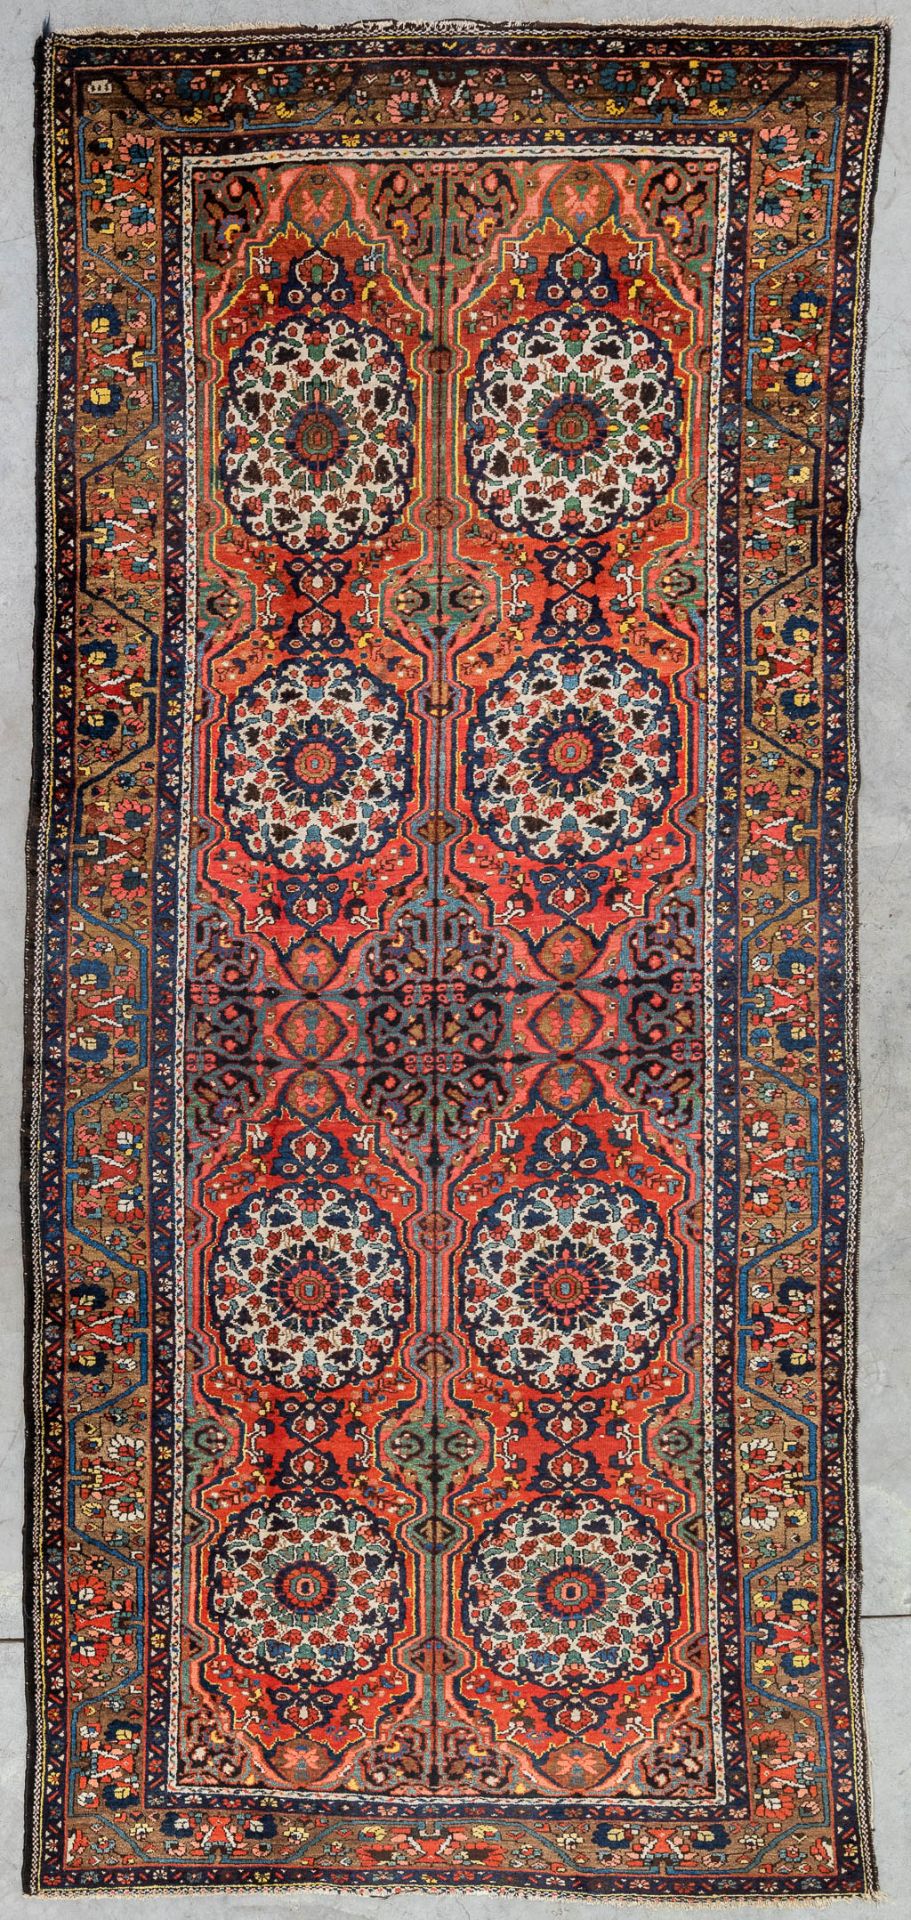 An Oriental hand-made carpet. Bokhara (400 x 185 cm)